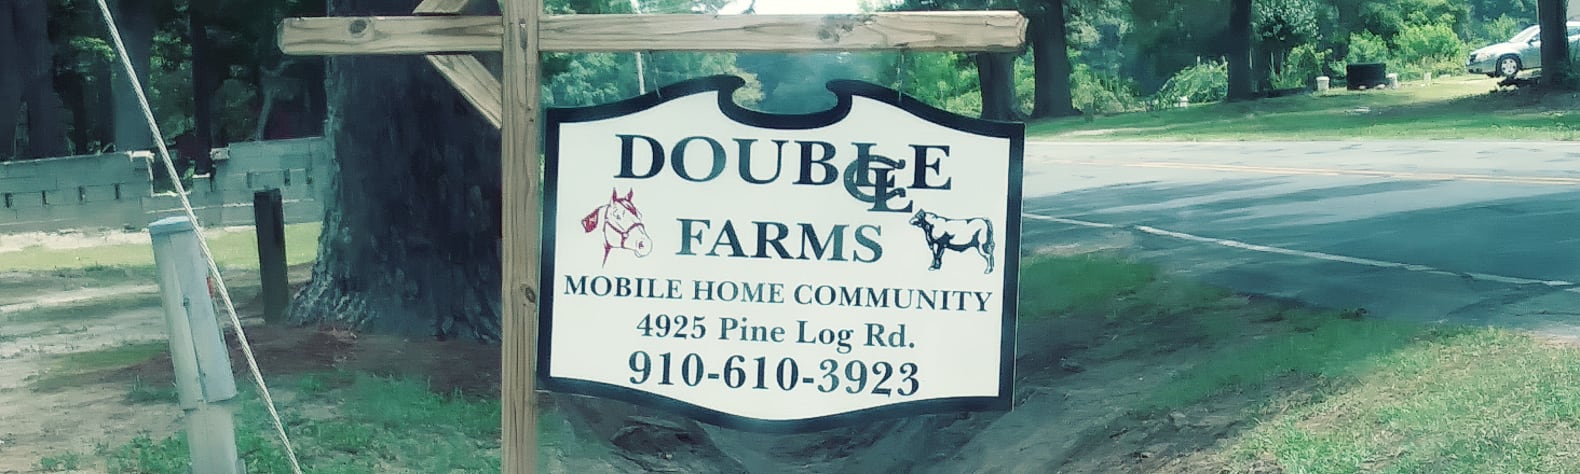 Double L Farms